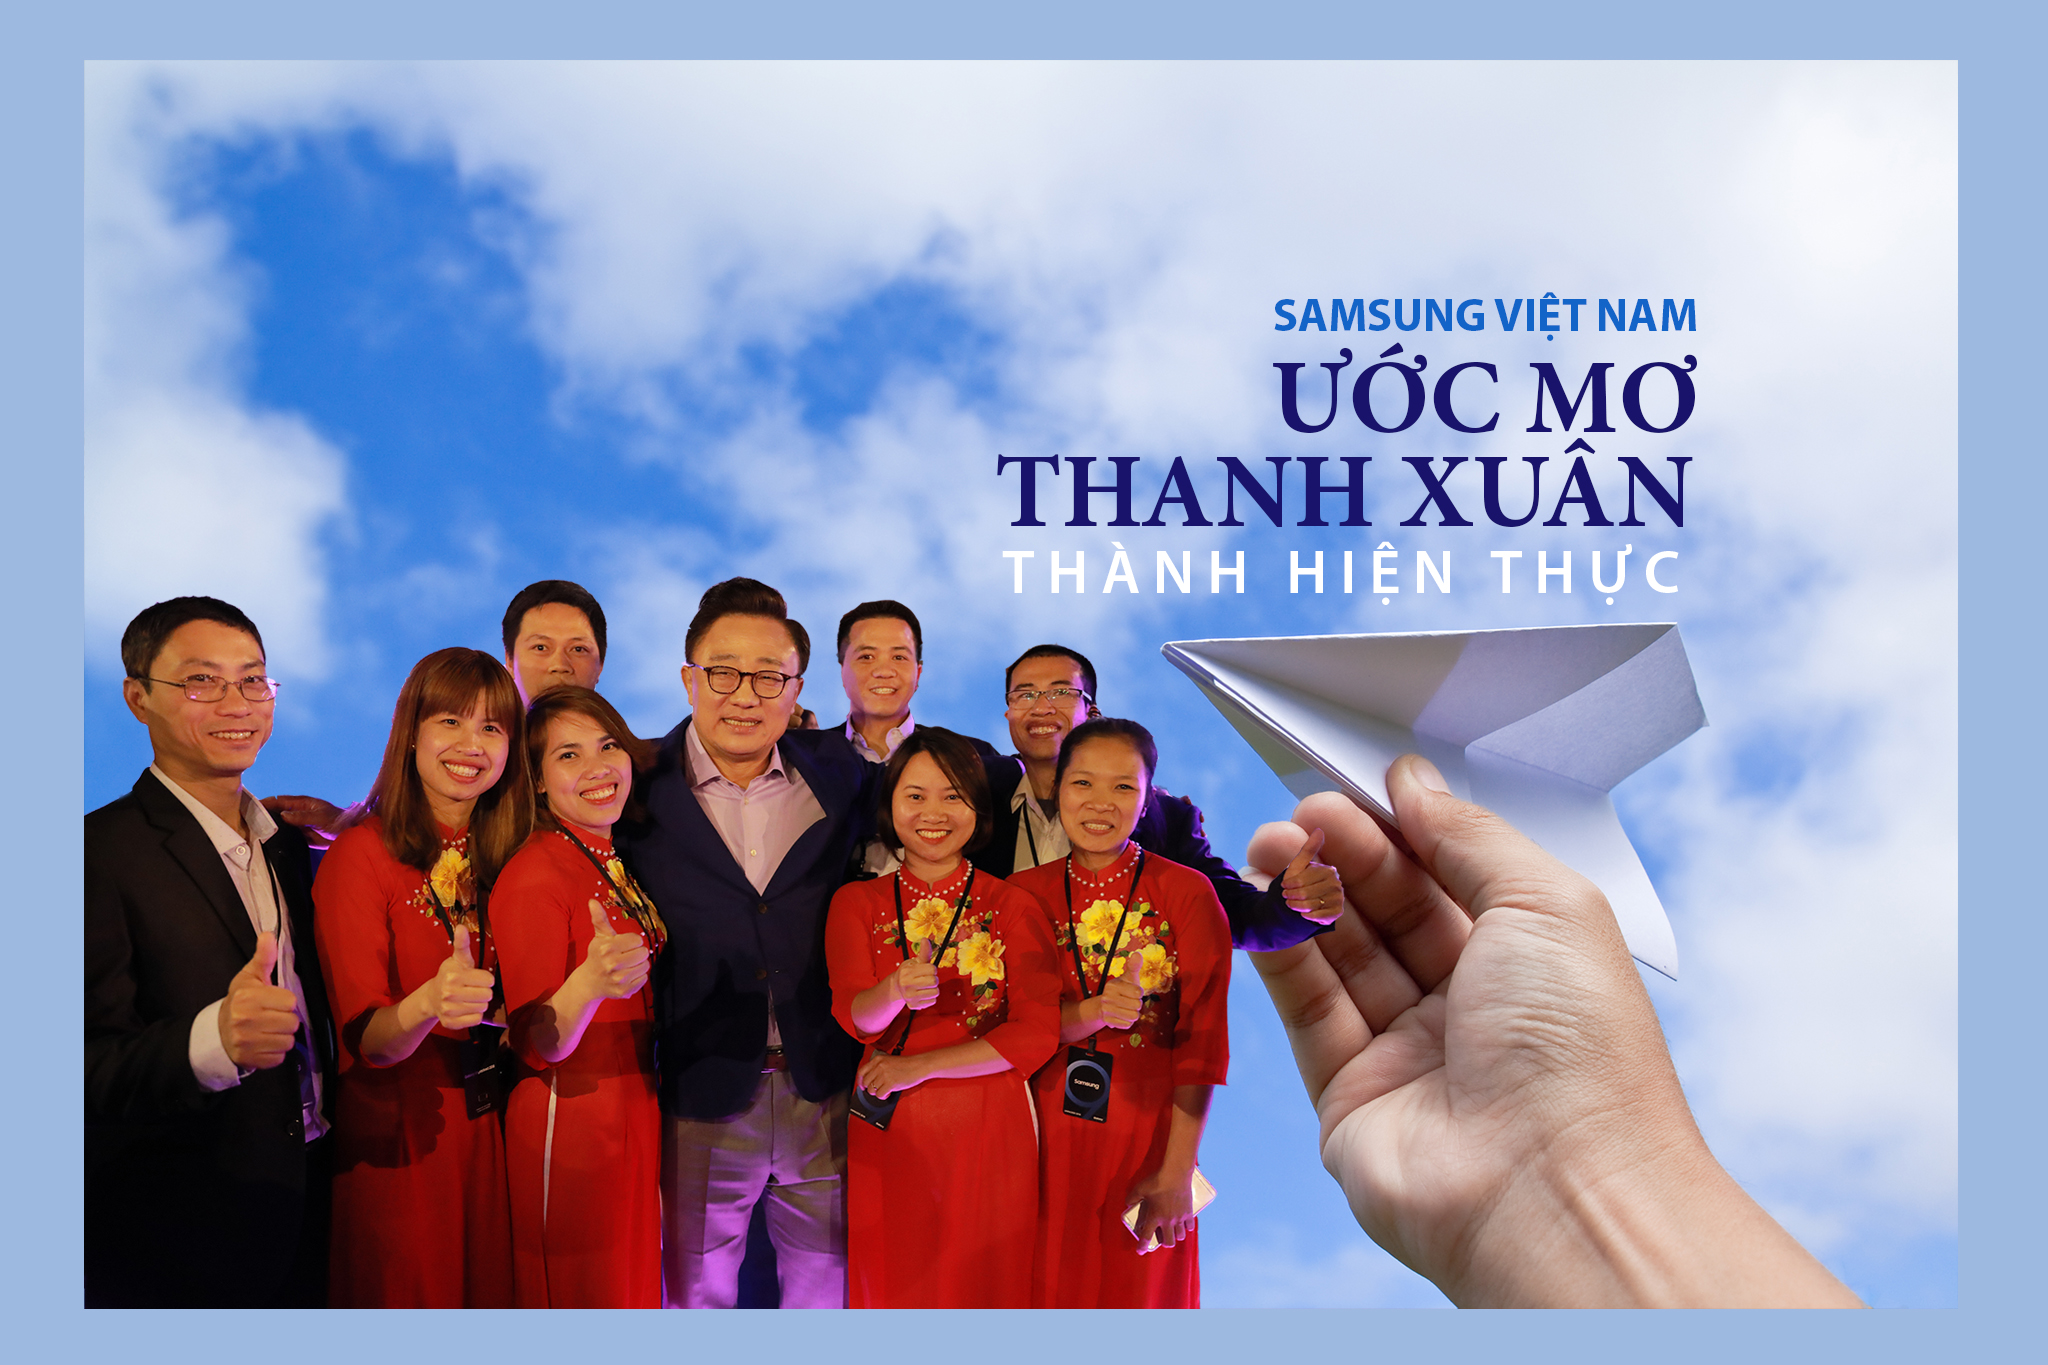 Phạm Thị Hằng và giấc mơ thành hiện thực khi tham dự lễ ra mắt bộ đôi siêu phẩm Galaxy S9 và S9+